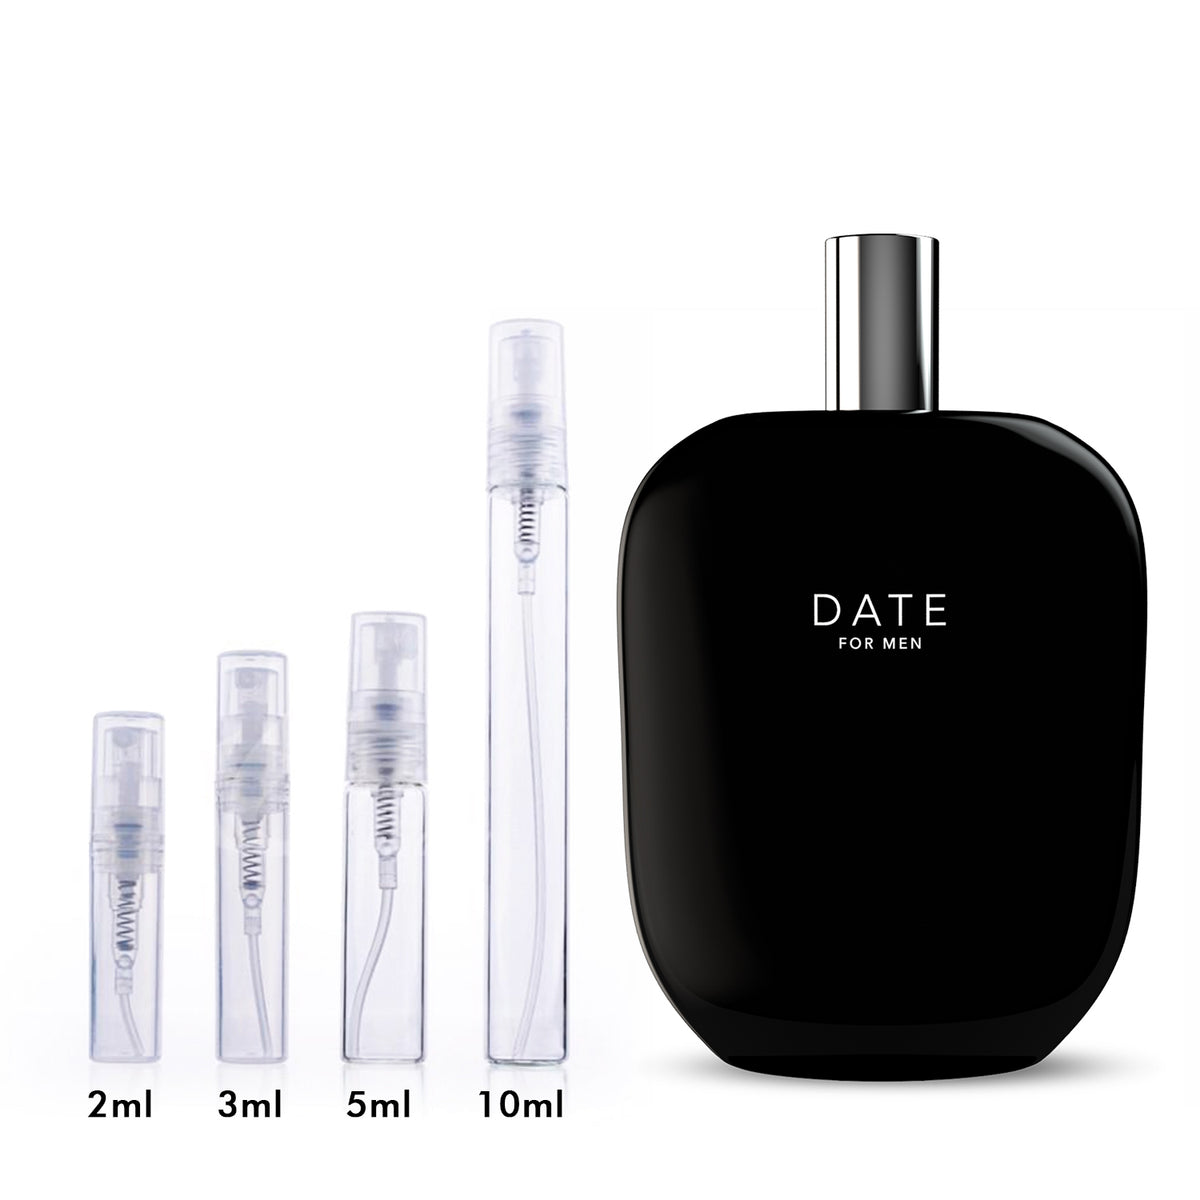 Jeremy Fragrance Fragrance One Date for Men EDP